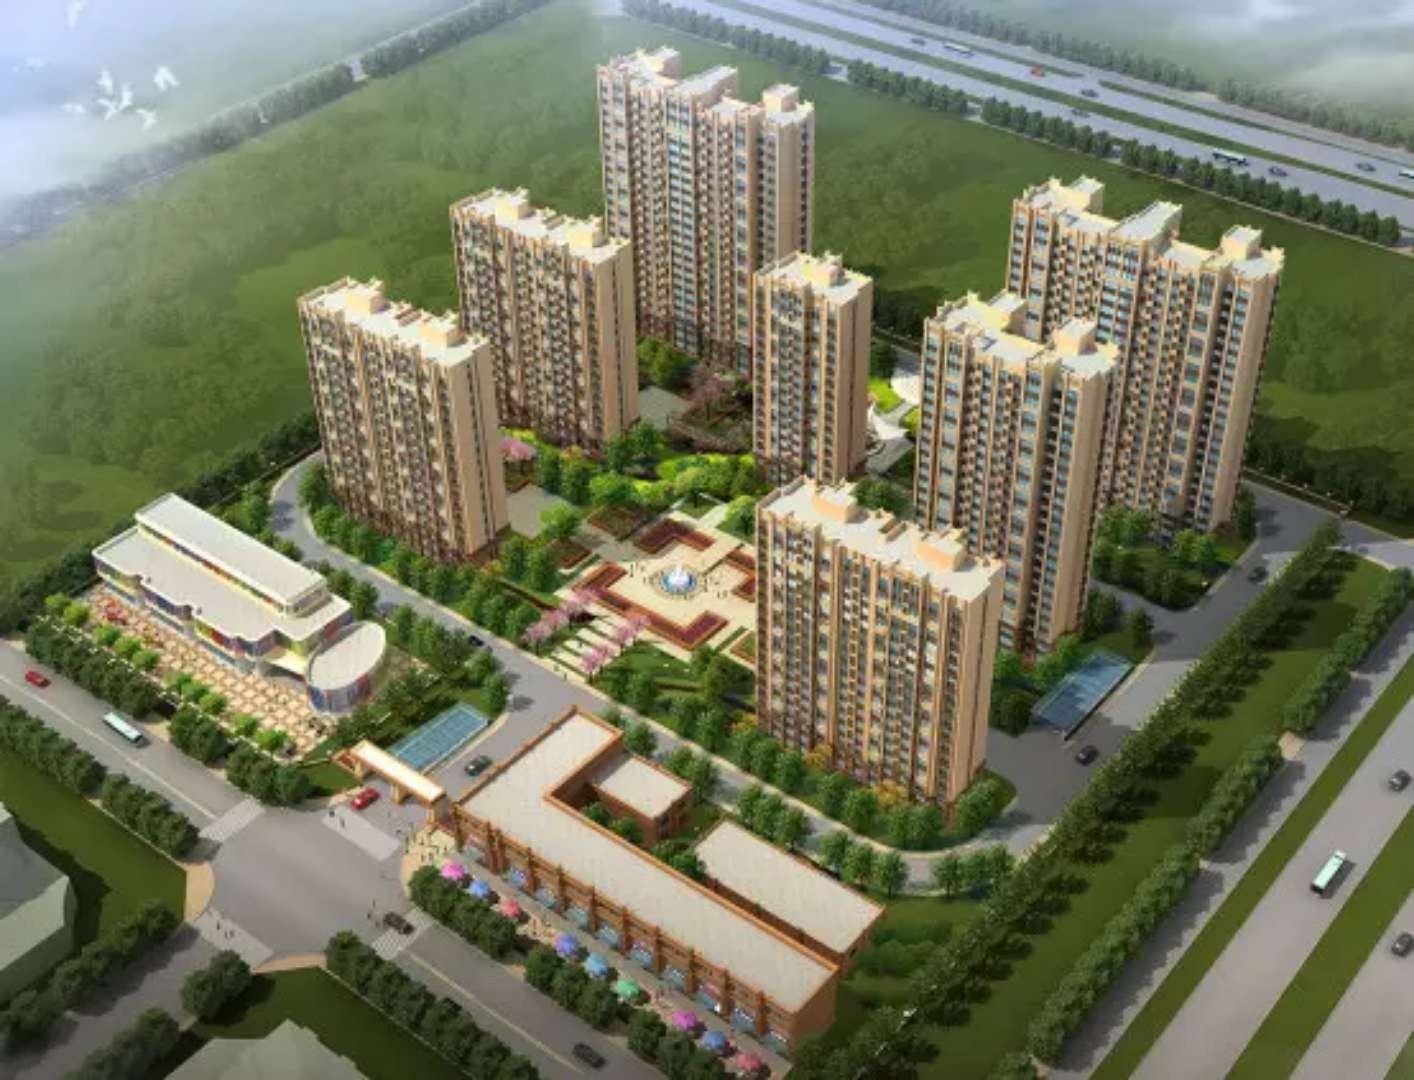 碧桂园隆盛府 3居-4居户型在售 一期高层预计2022年12月31日交房-全国房产资讯-置慧房